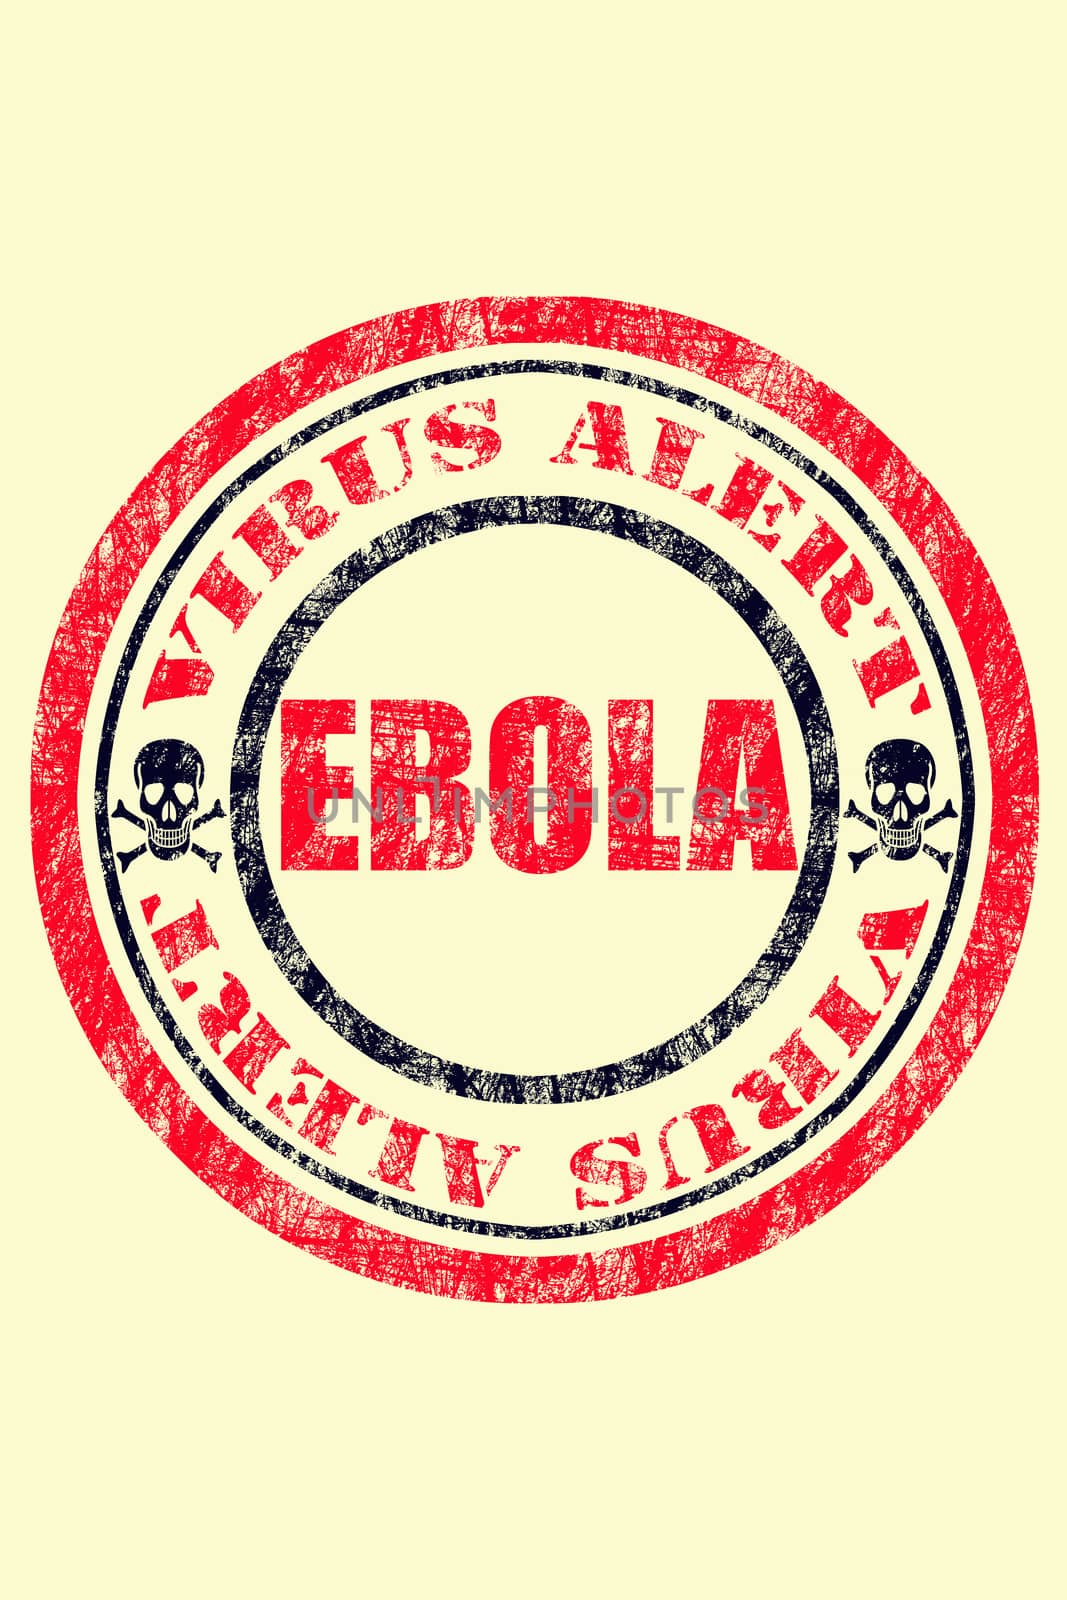 Ebola Virus Alert, Danger Sign by yands